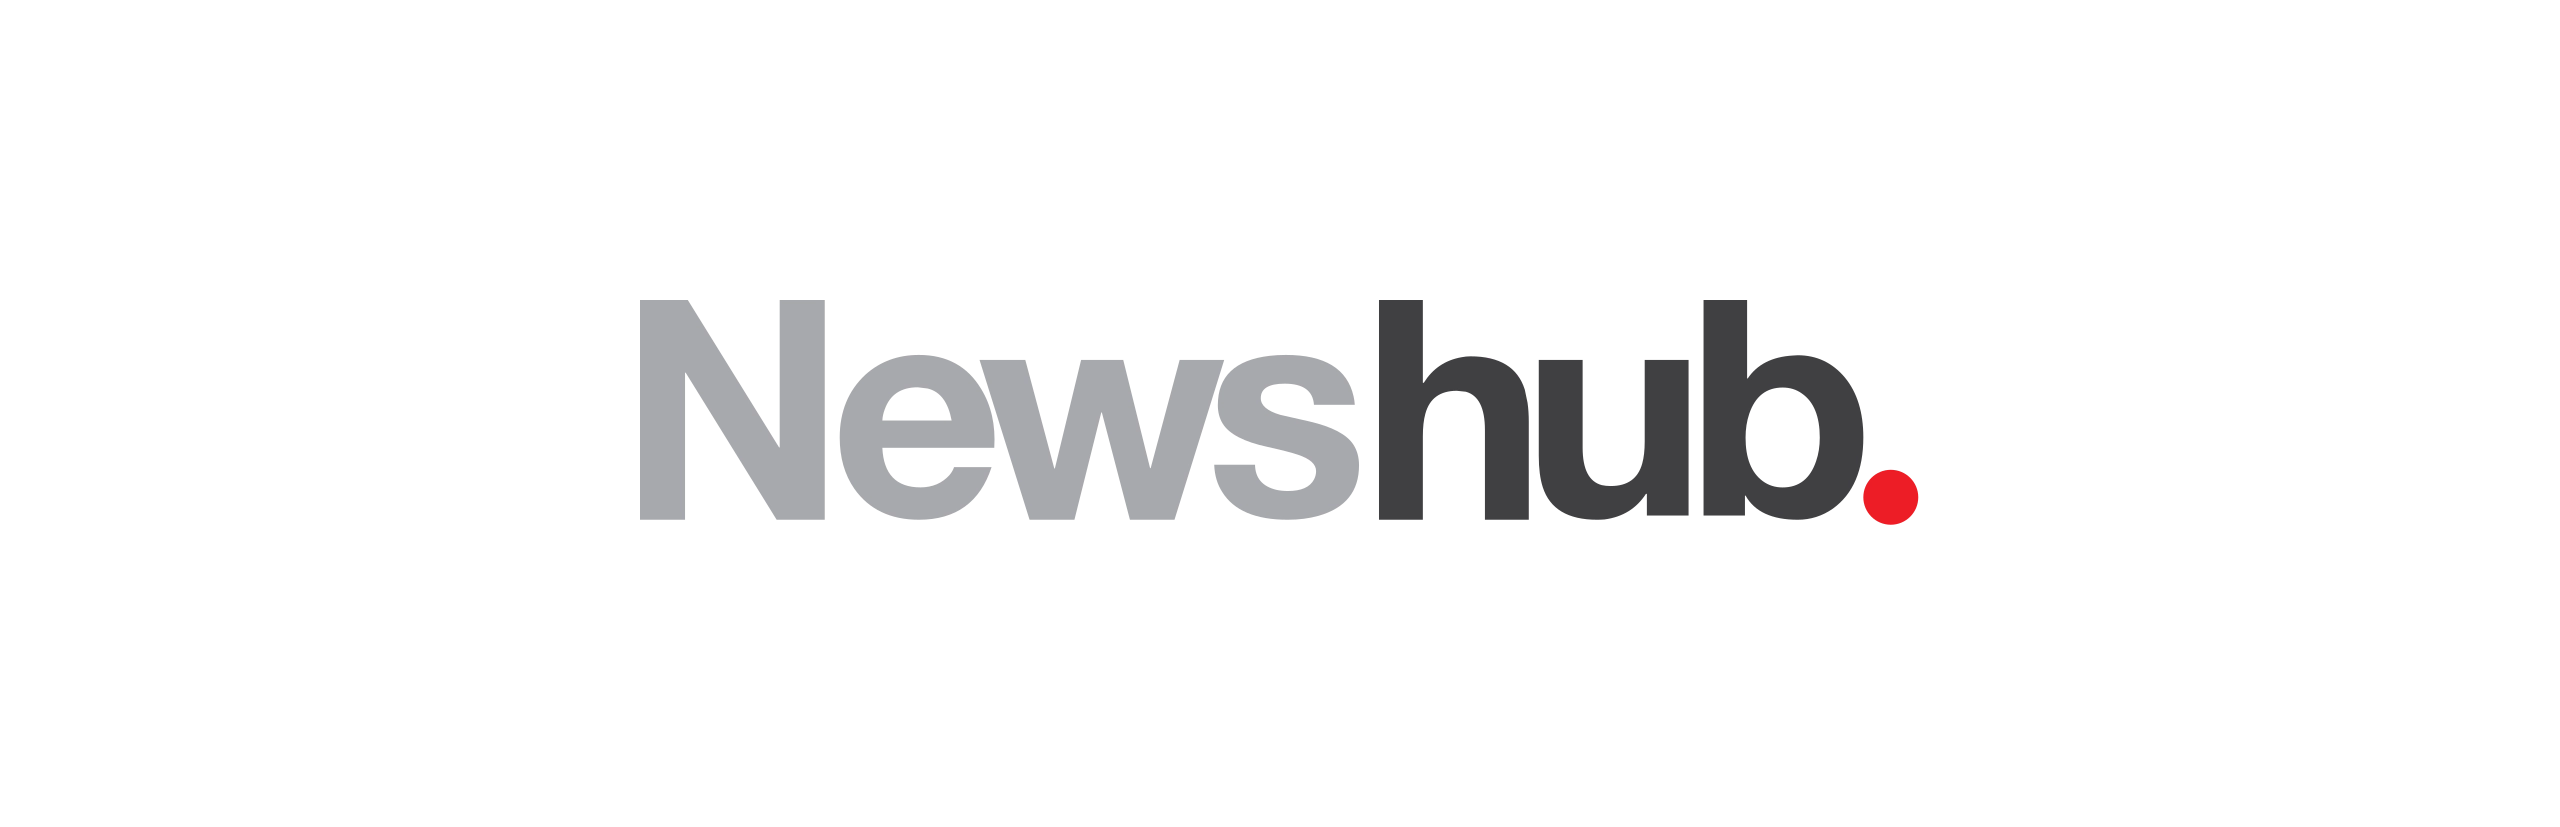 Newshub logo v2